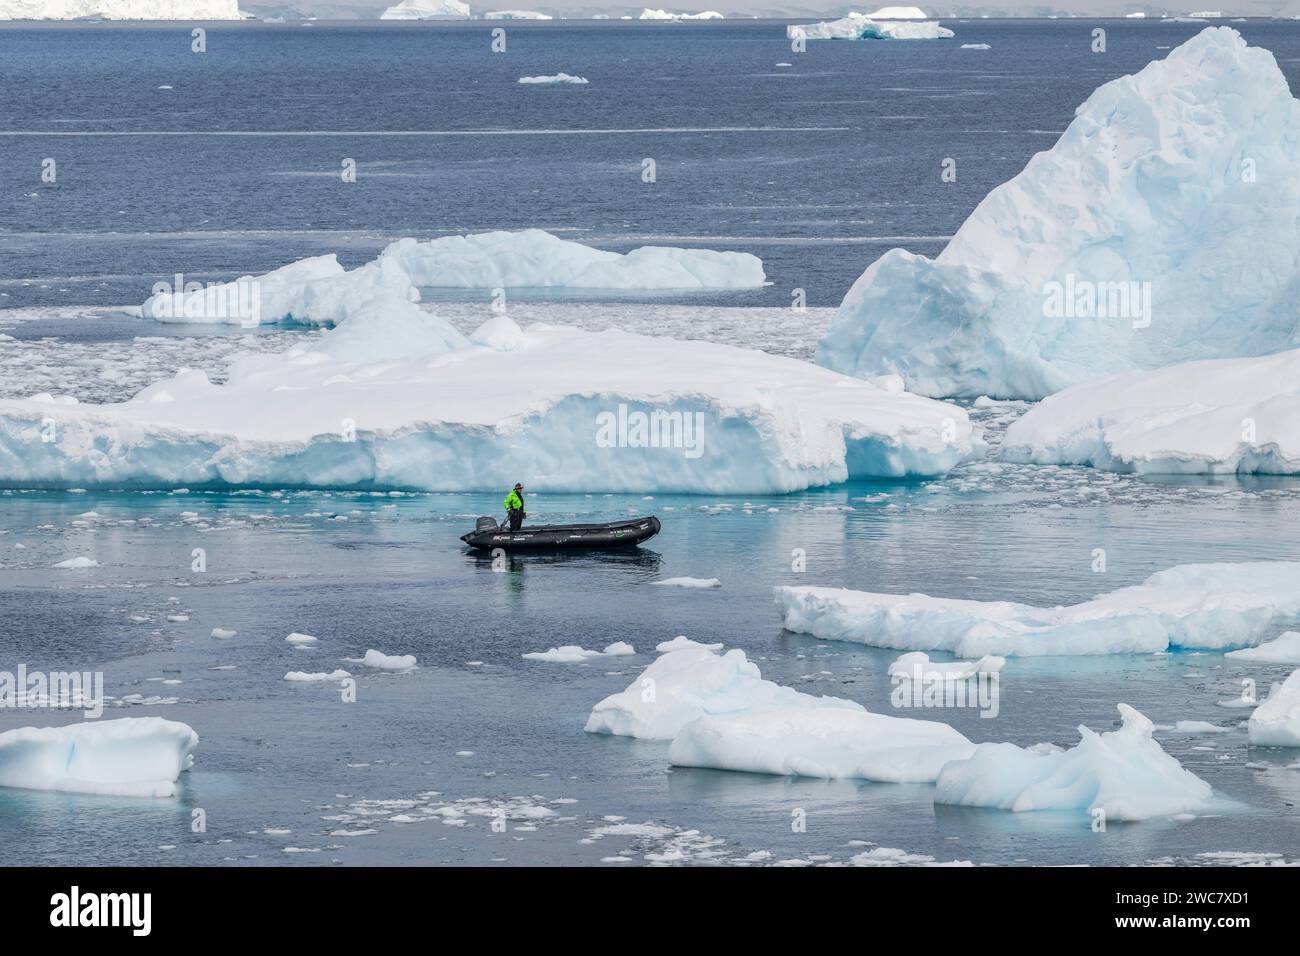 Zodiaco che naviga attraverso le acque ghiacciate di Neko, porto, Antartide, vista ravvicinata degli iceberg che si riflettono sull'acqua circostante Foto Stock